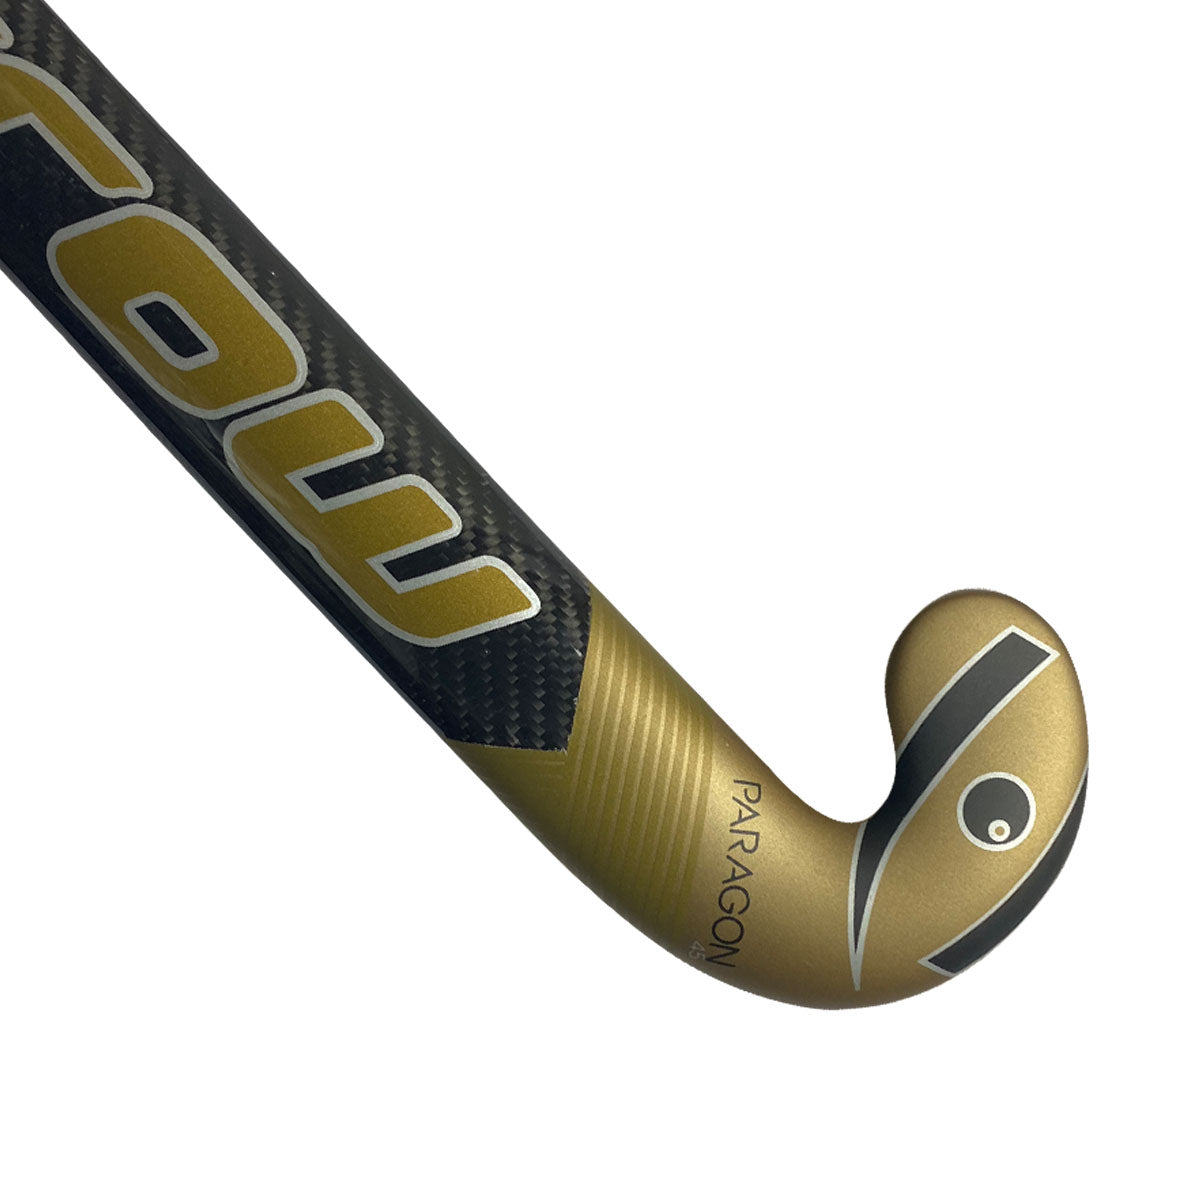 Paragon 45 Field Hockey Stick - Harrow Sports